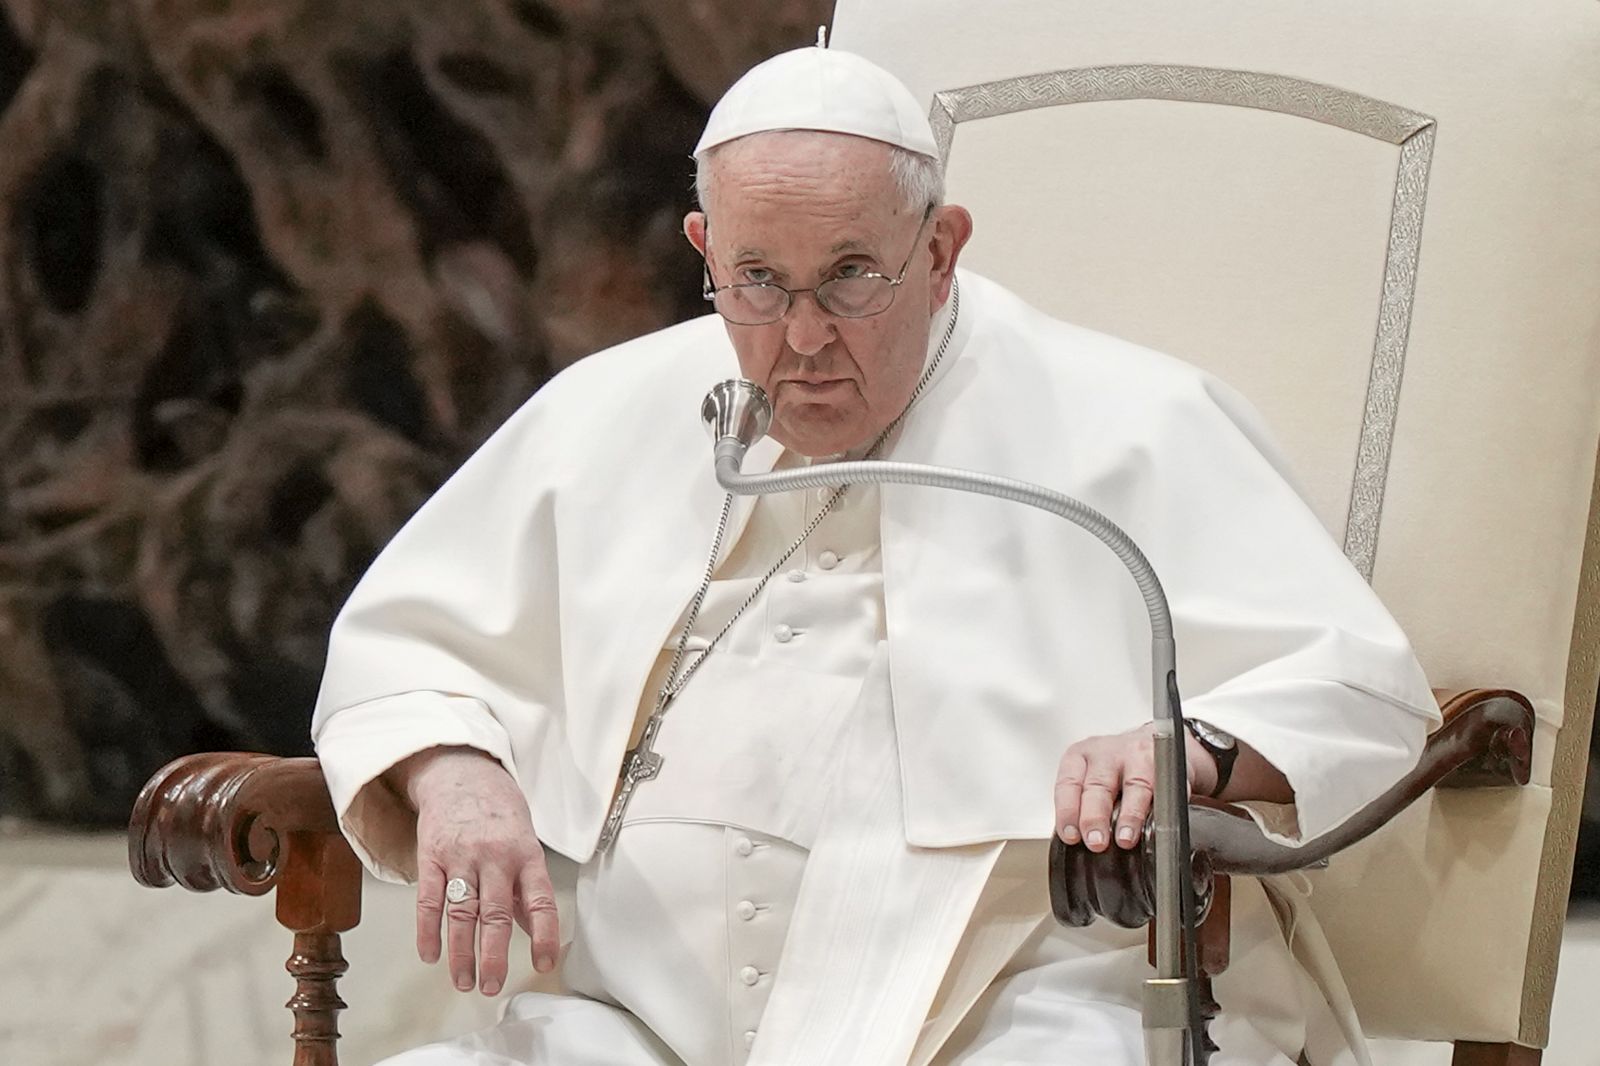 Papa Baydenlə Rusiya ilə danışıqları müzakirə etməyi planlaşdırır